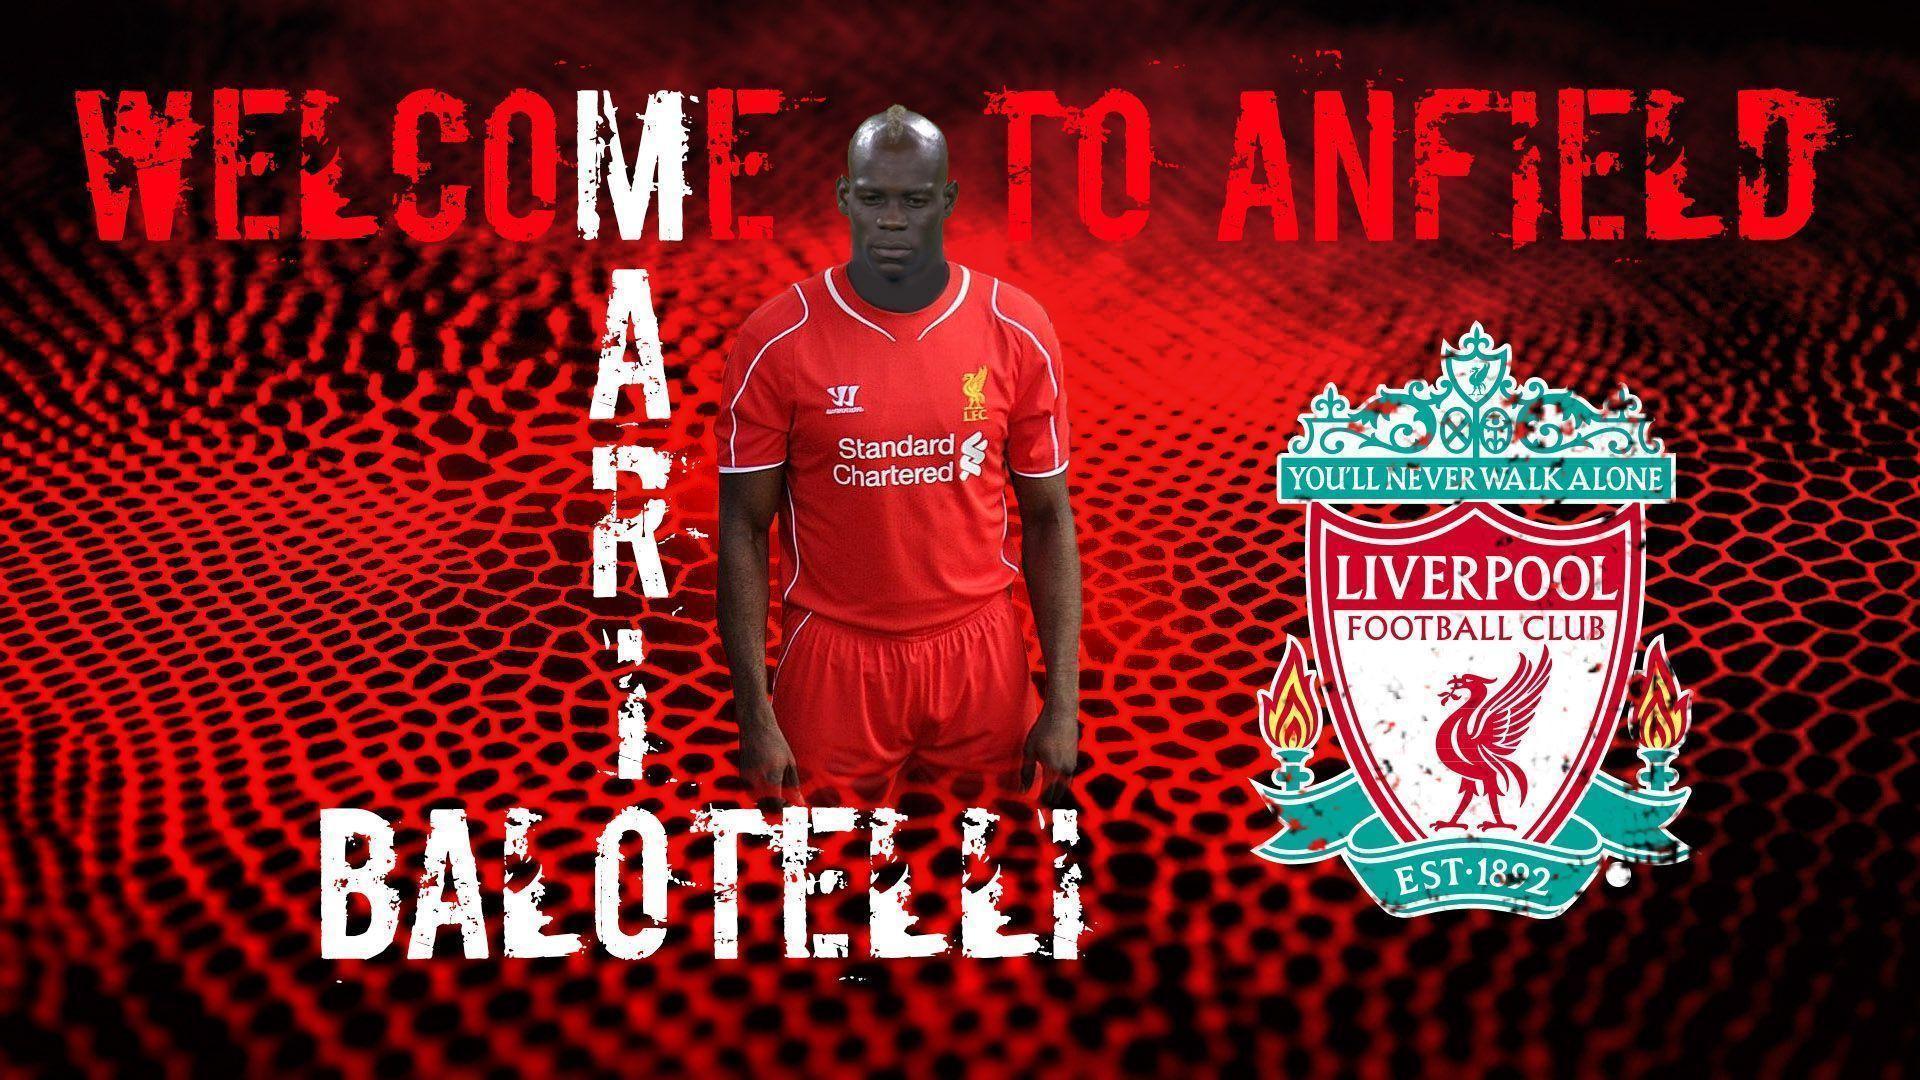 Mario Balotelli 2014 Liverpool FC Wallpaper Wide or HD. Male